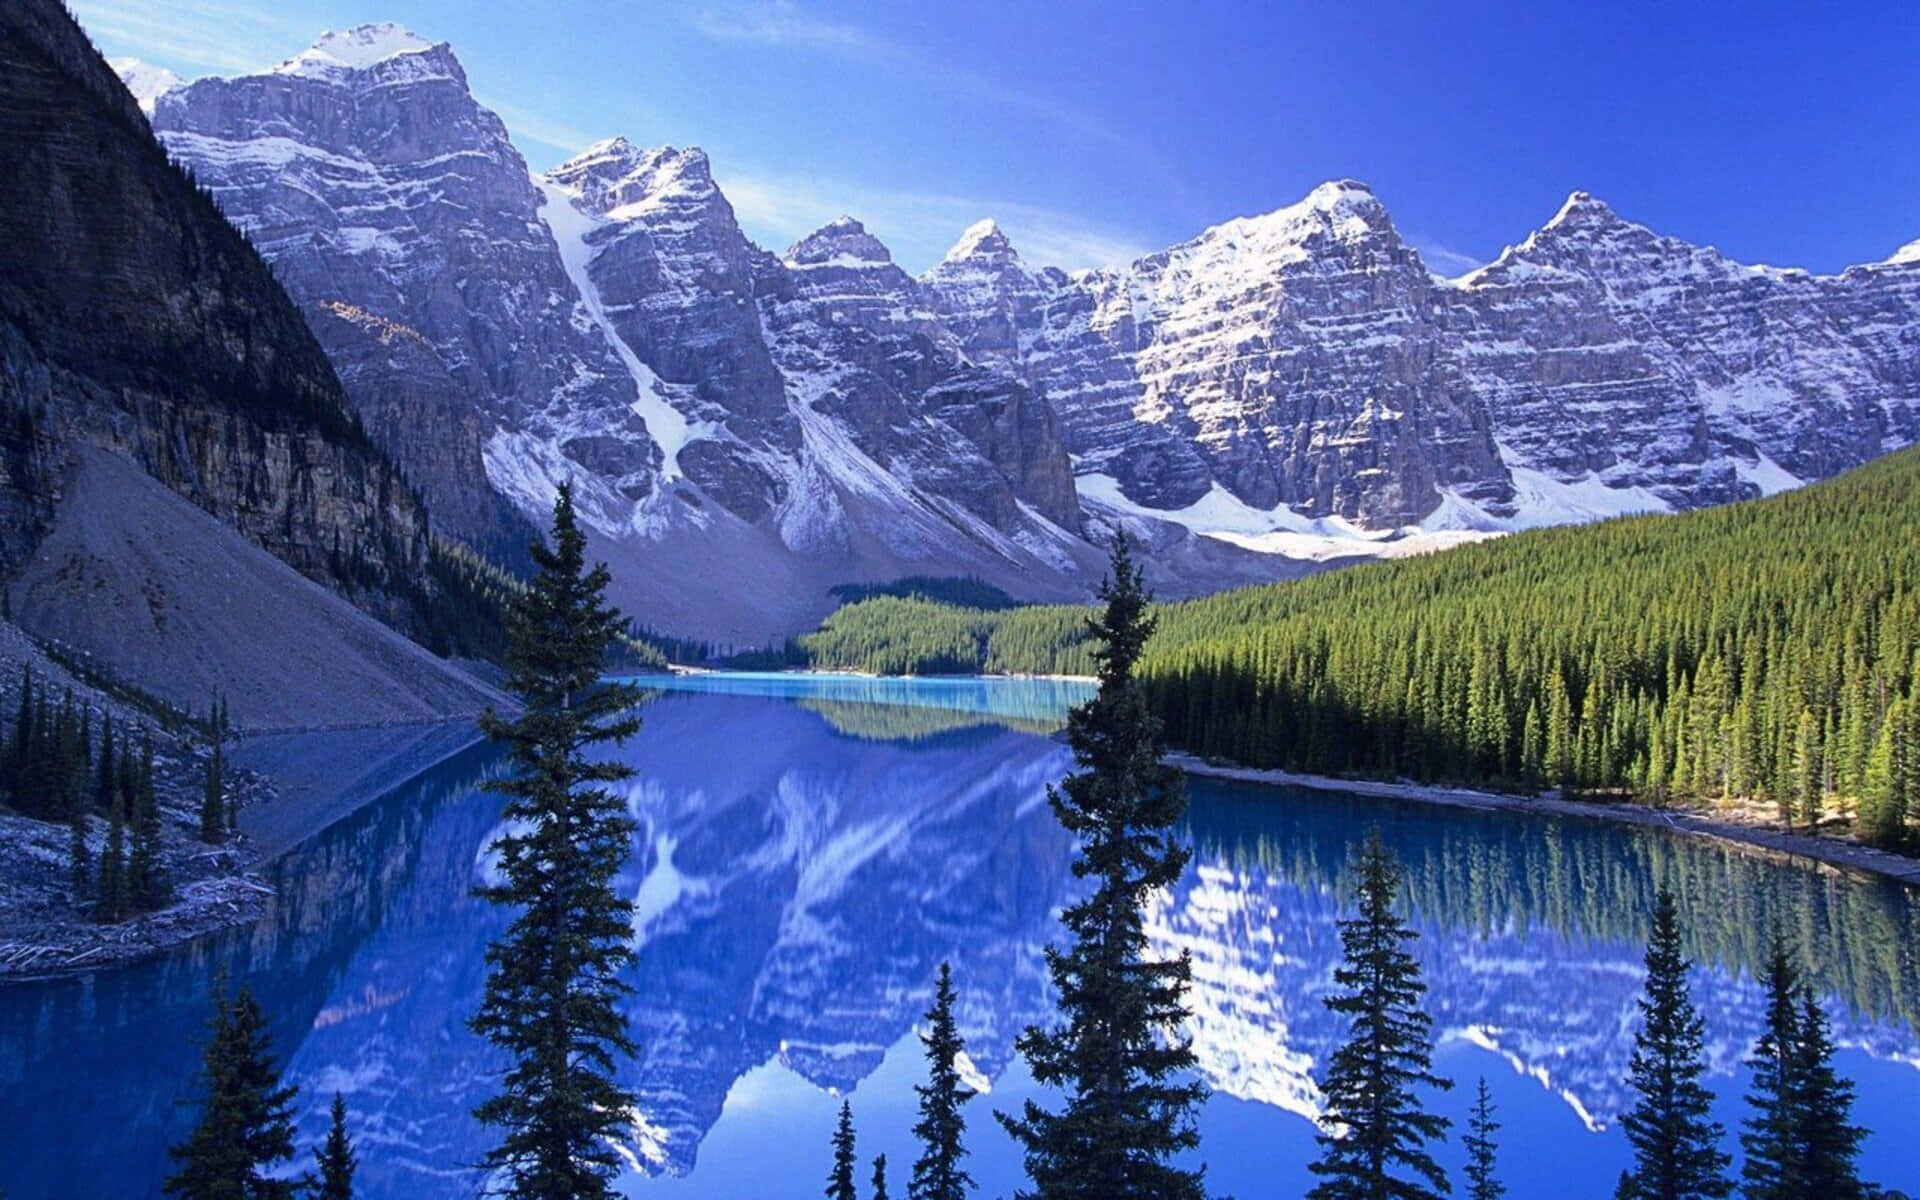 Bakgrundsbildfrån Naturen, Banff National Park, 1080p.